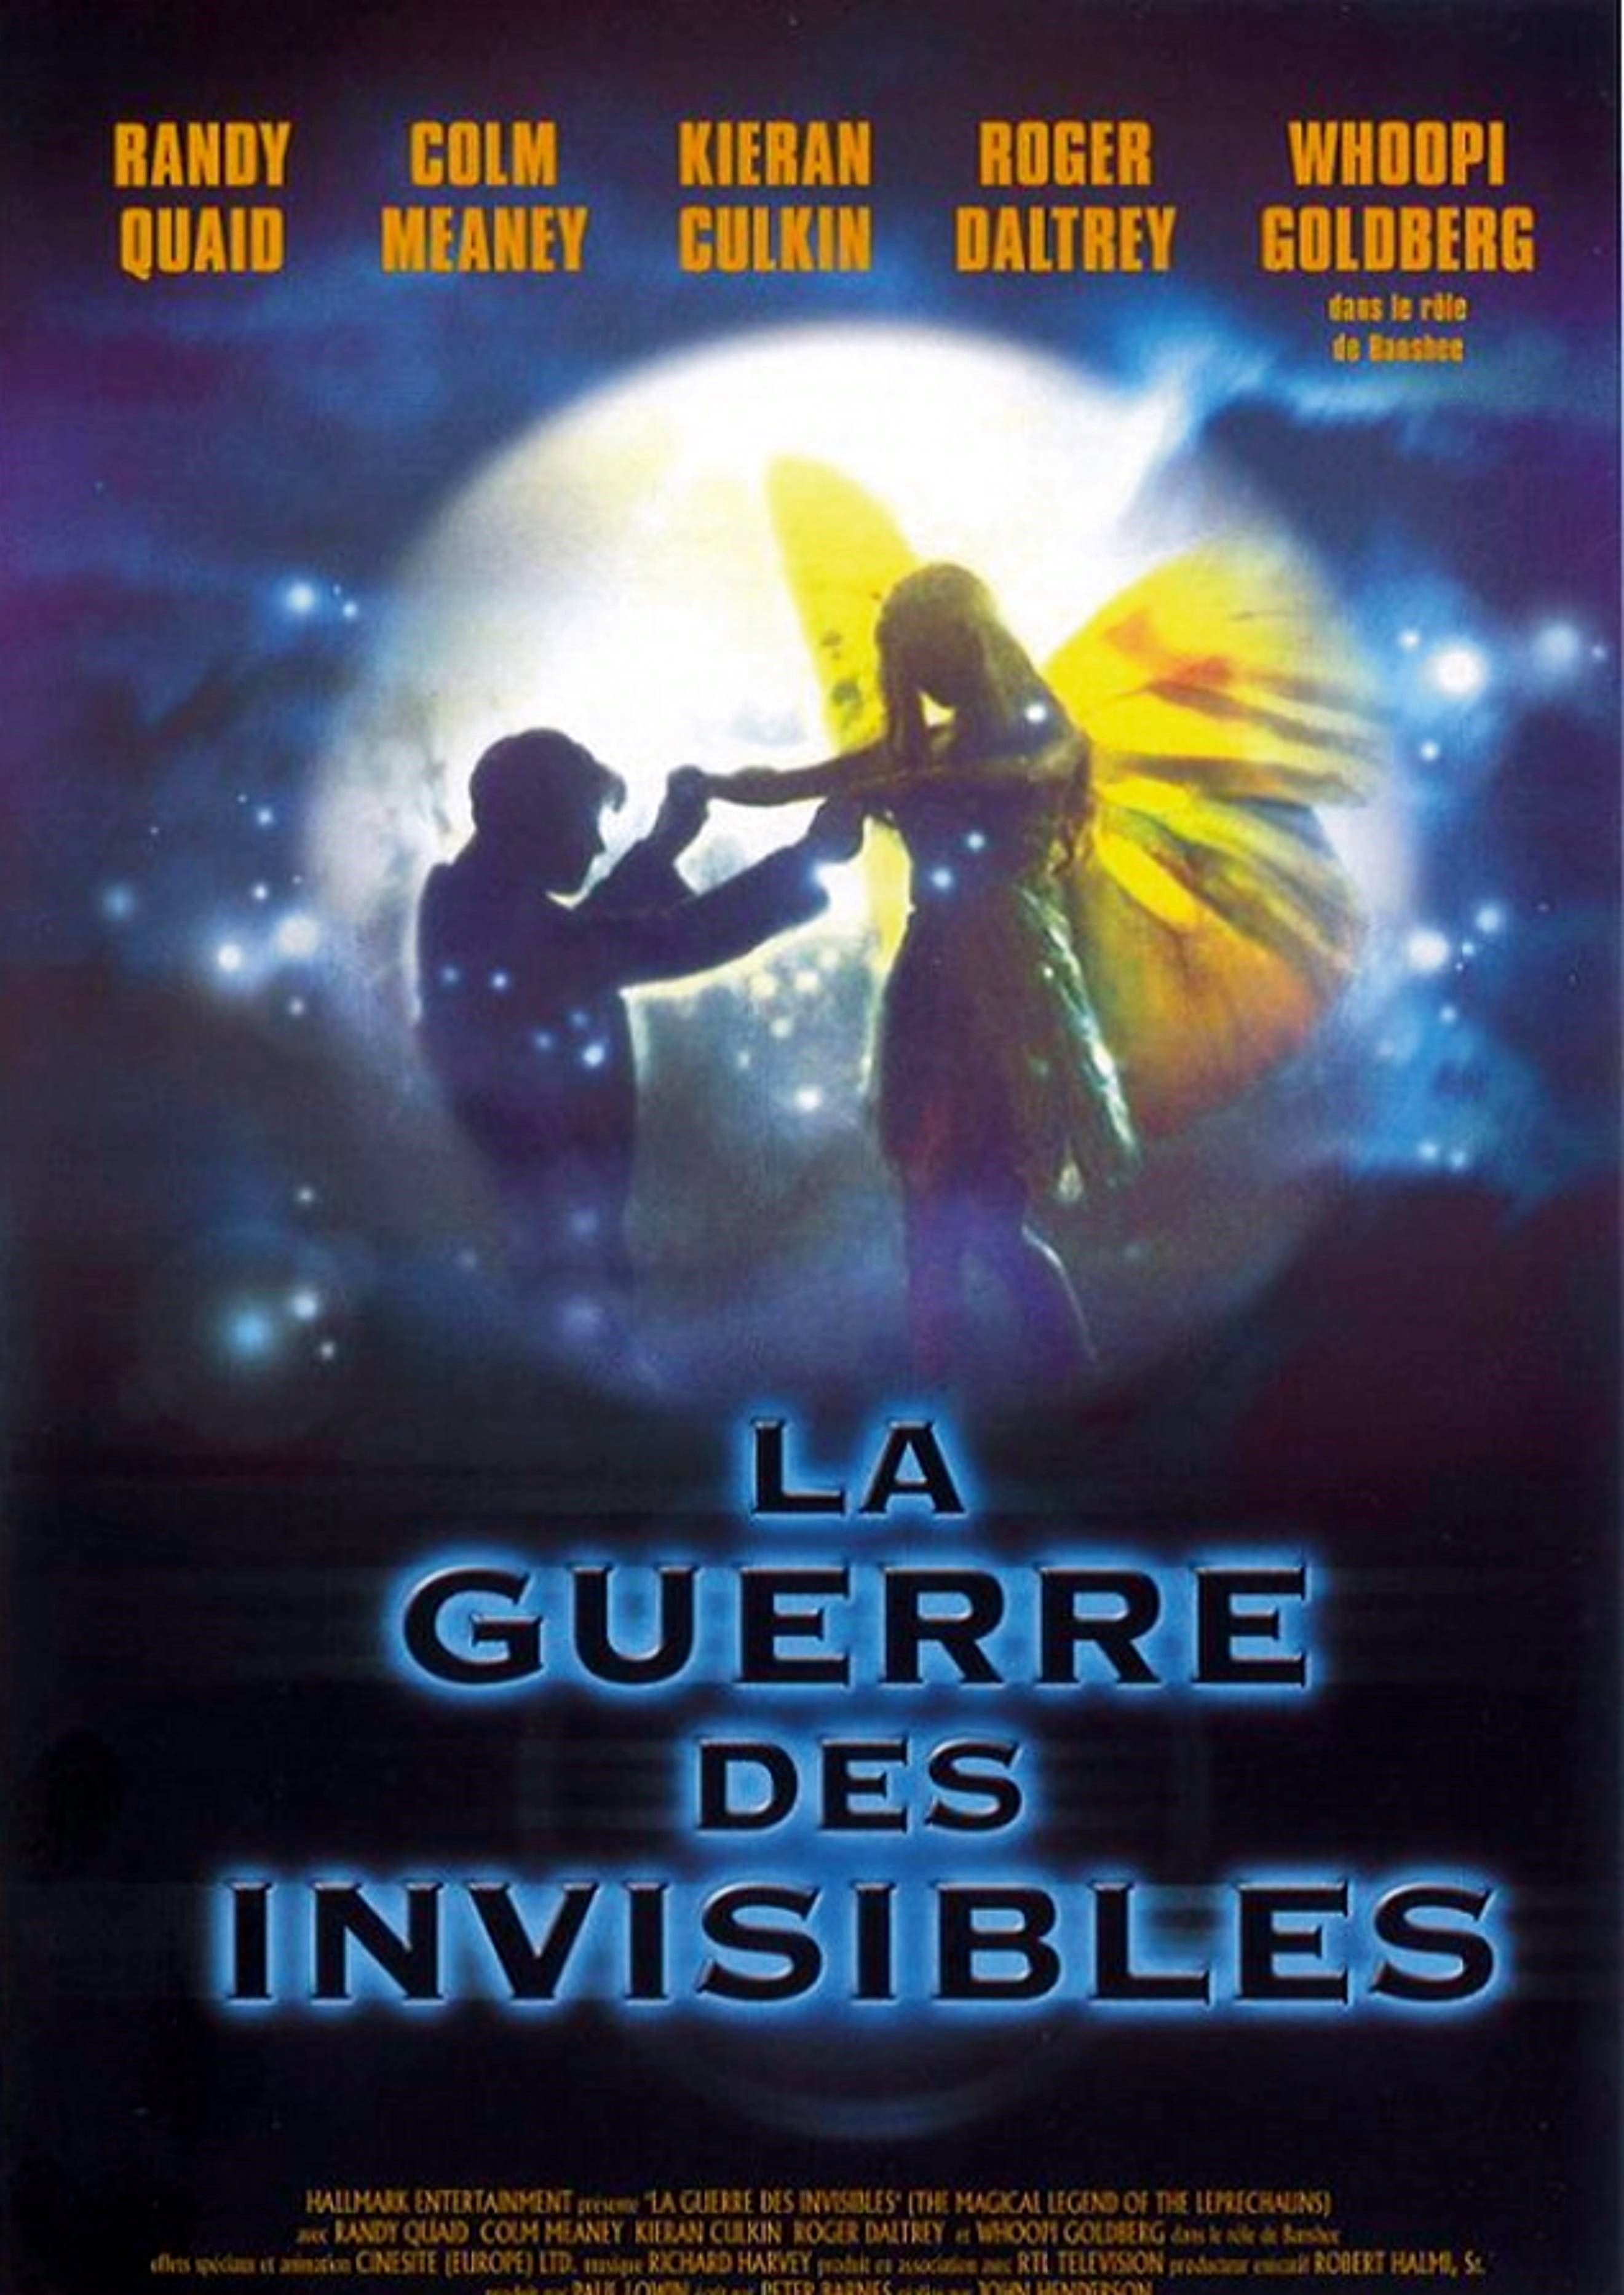 Le Monde magique des Leprechauns - Série (1999) - SensCritique